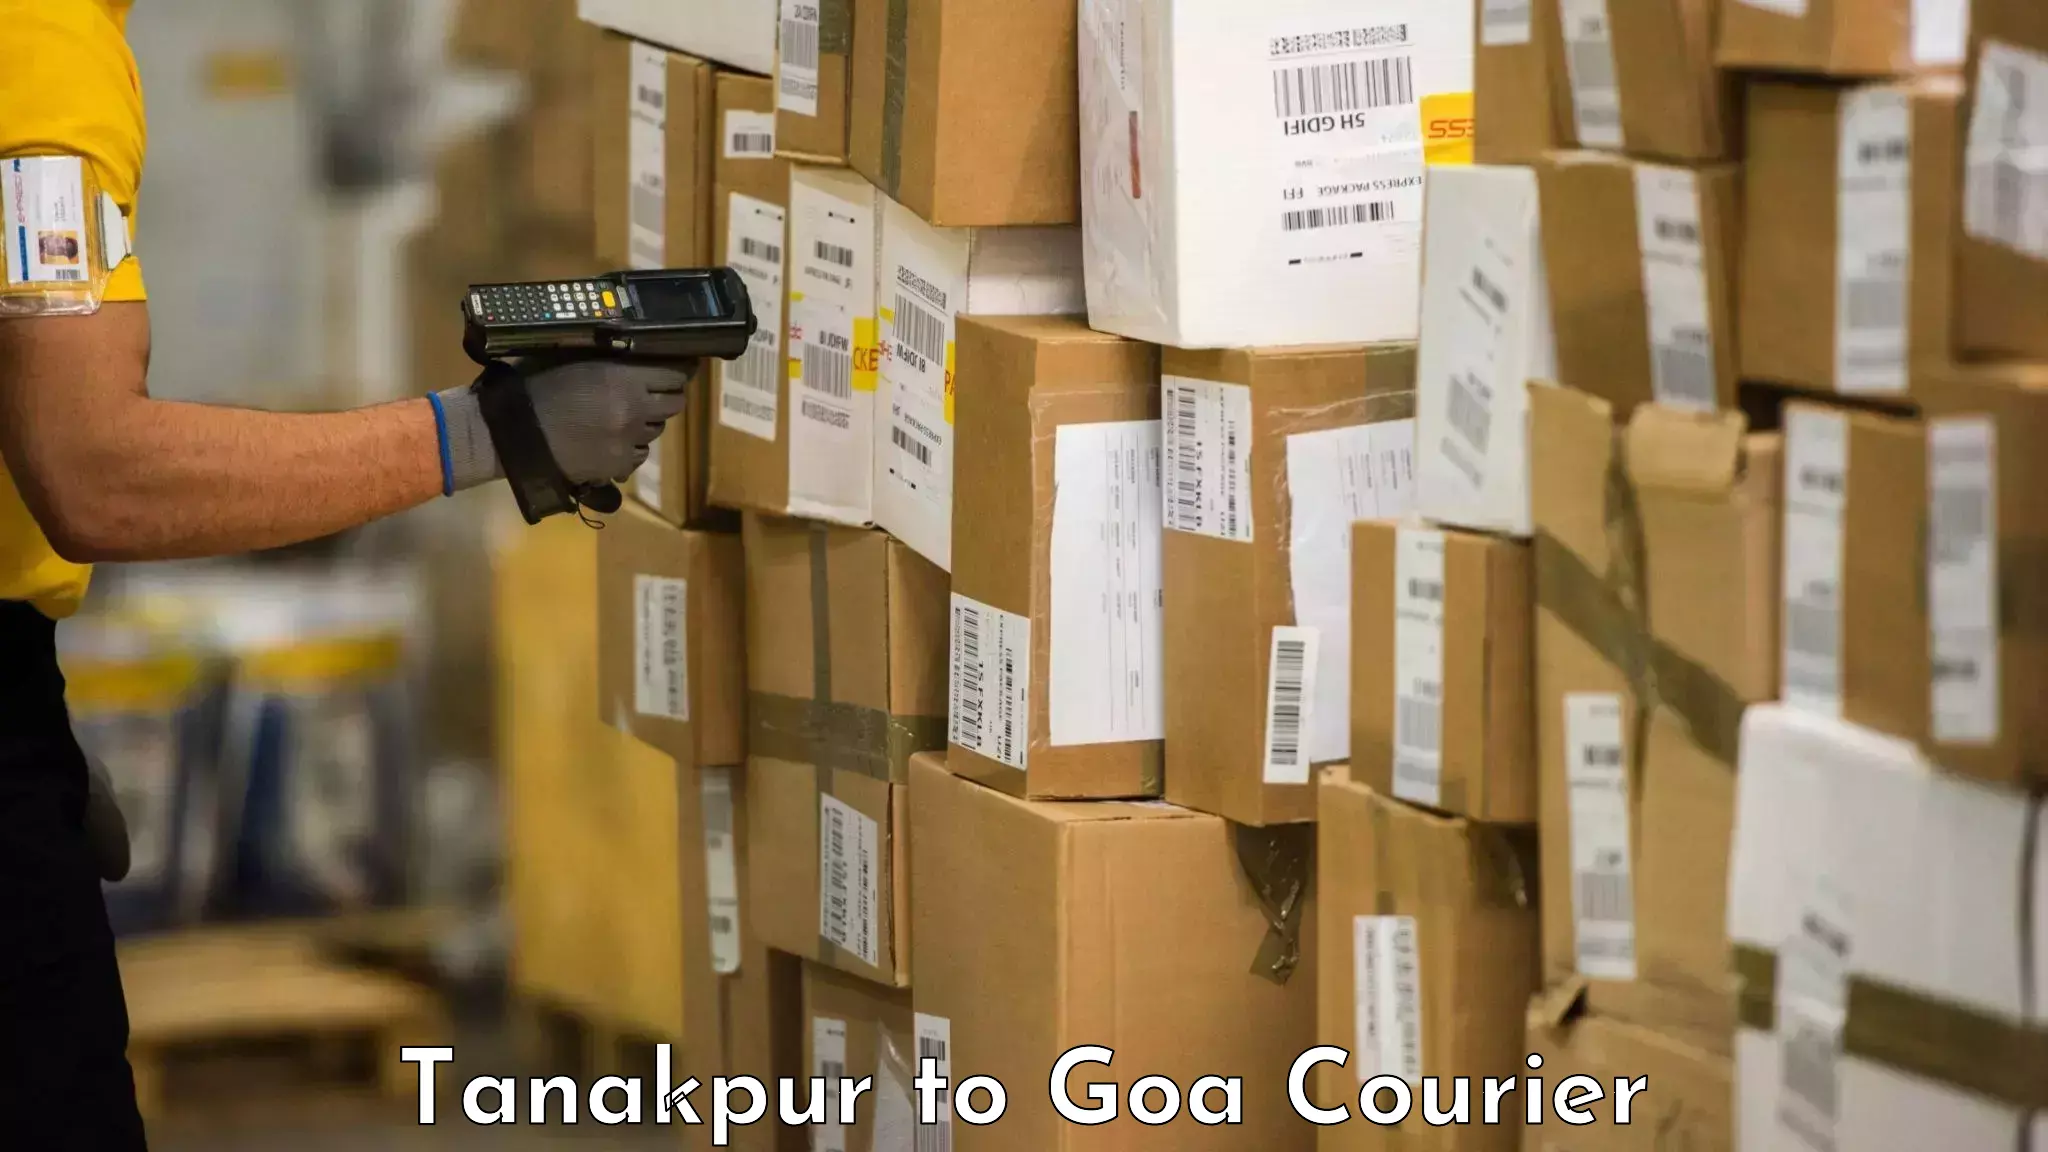 Baggage transport scheduler Tanakpur to Panaji